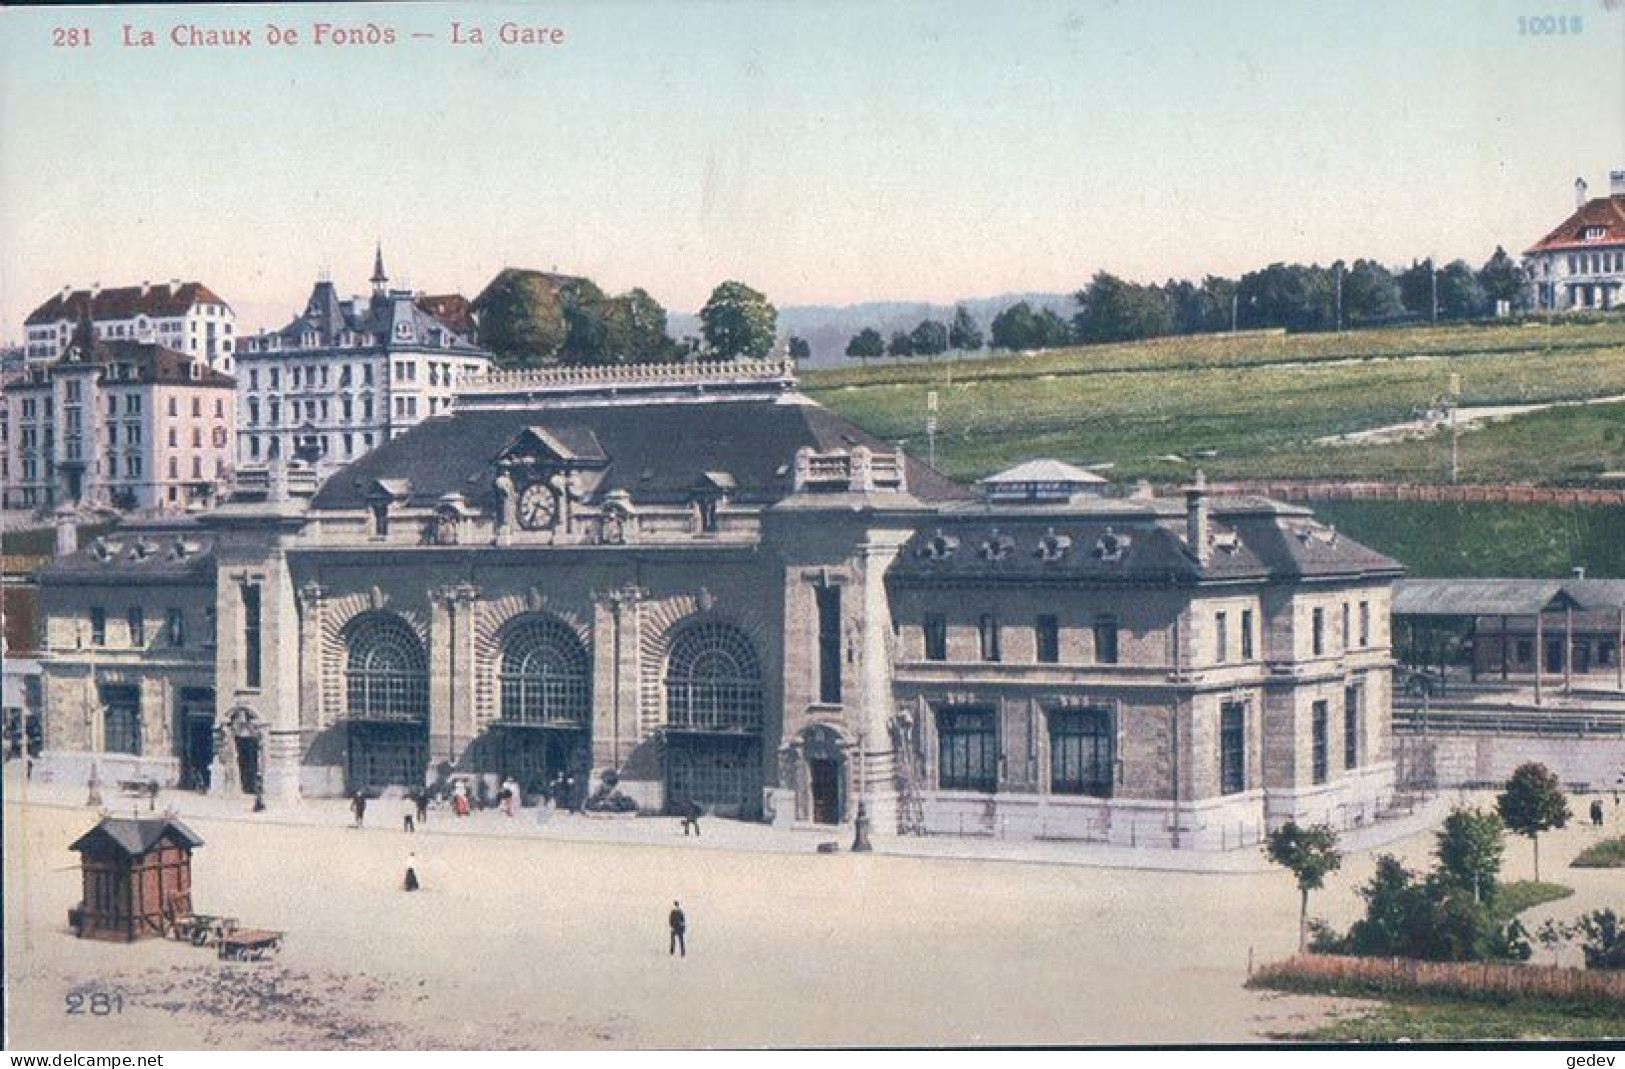 La Chaux De Fonds NE, La Gare (281) - La Chaux-de-Fonds